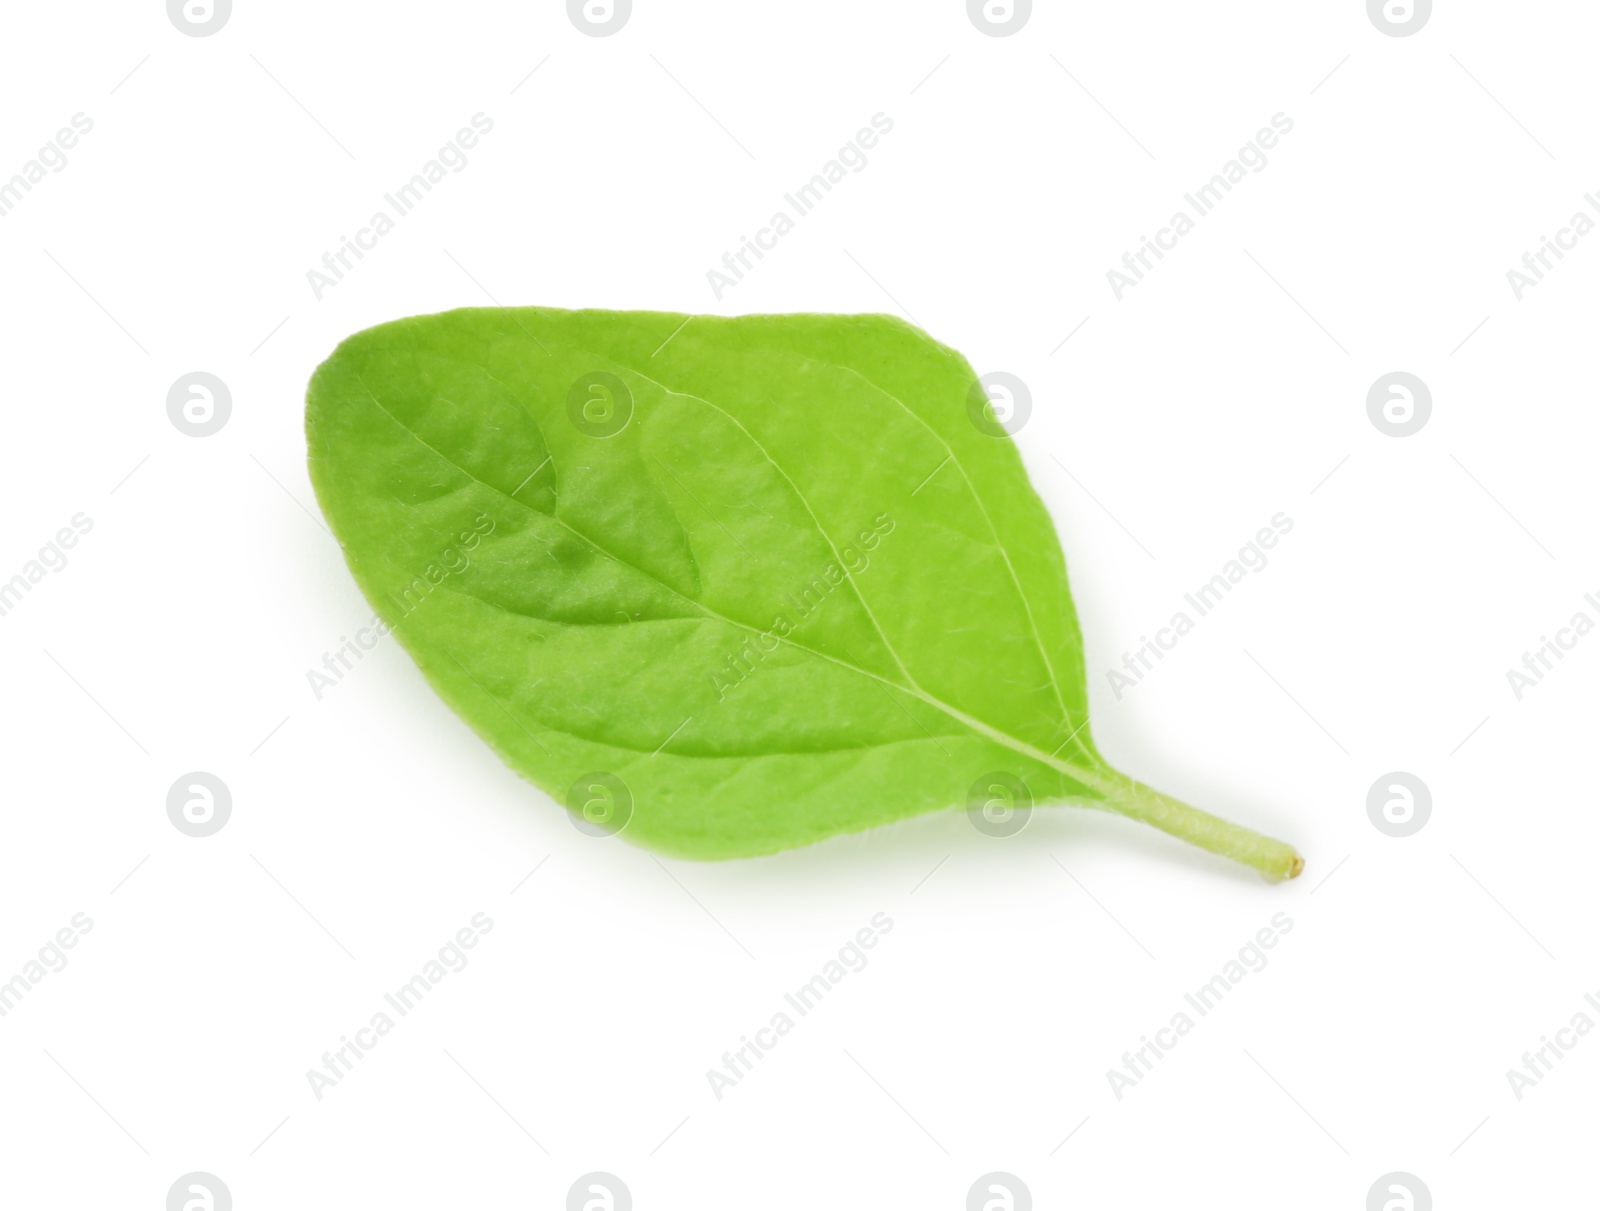 Photo of Leaf of fresh green oregano isolated on white